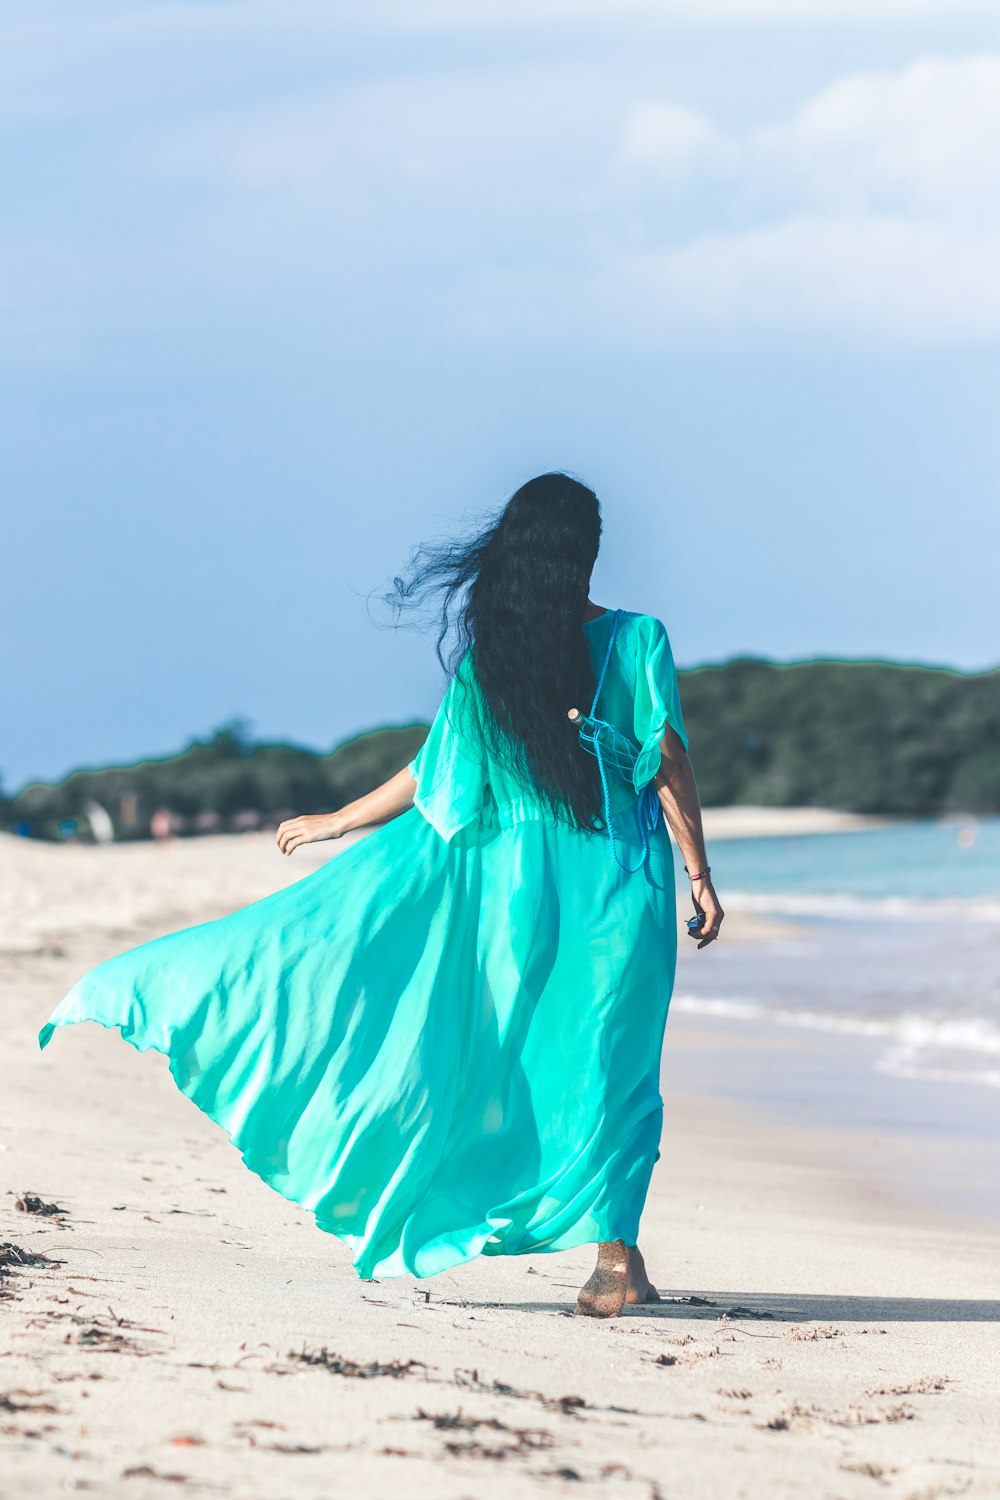 mulher no vestido azul de manga curta waling ao lado do corpo da água